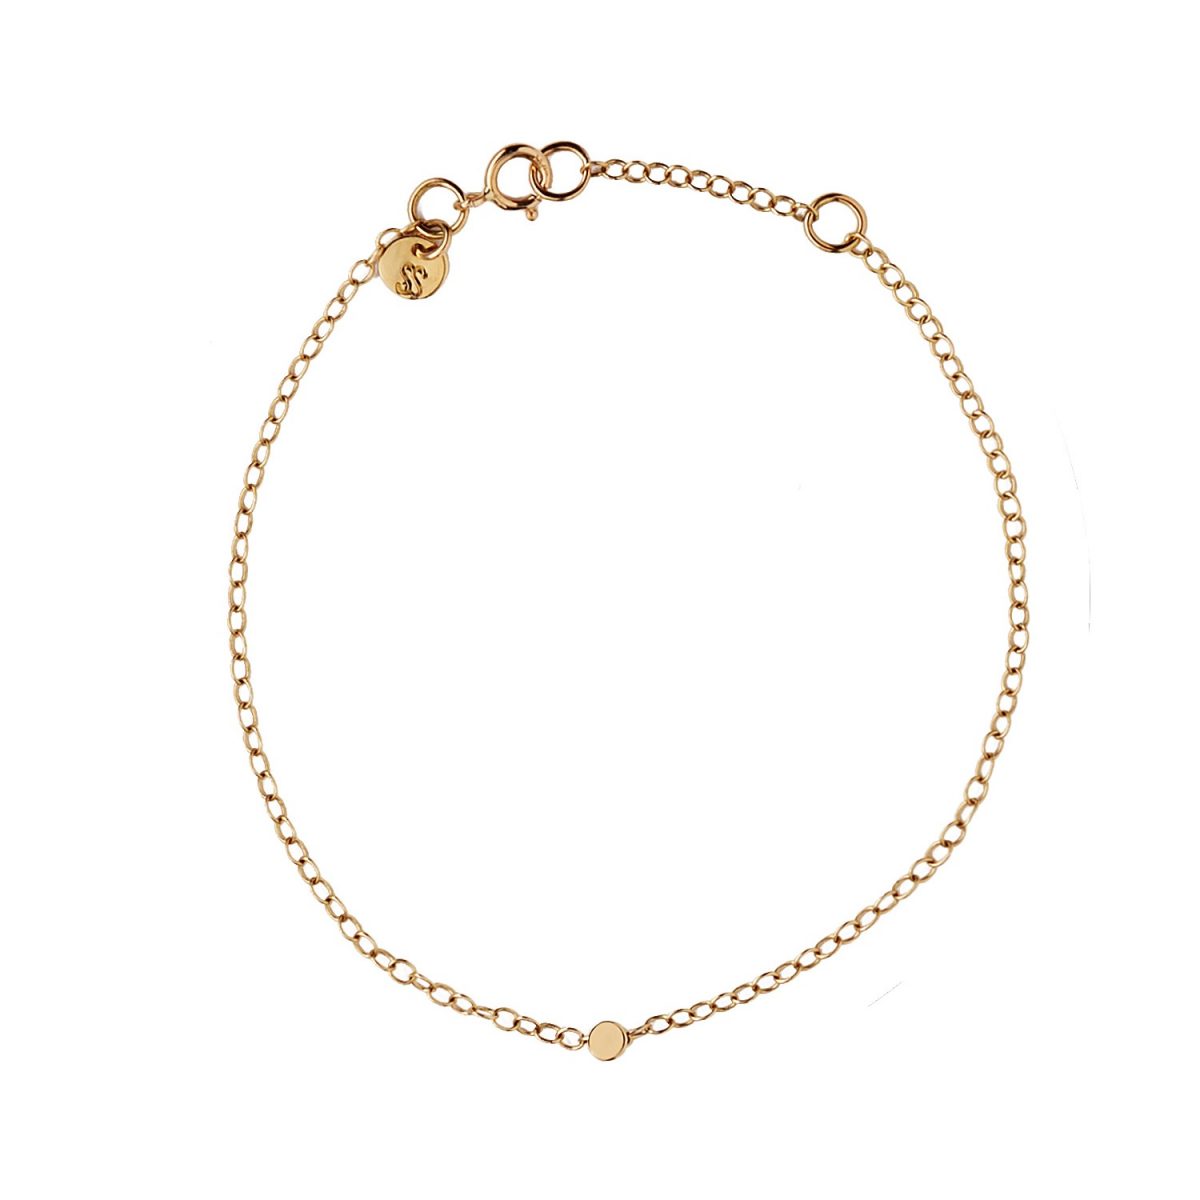 samojauskaite_jewellery_dot_bracelet_gold_full